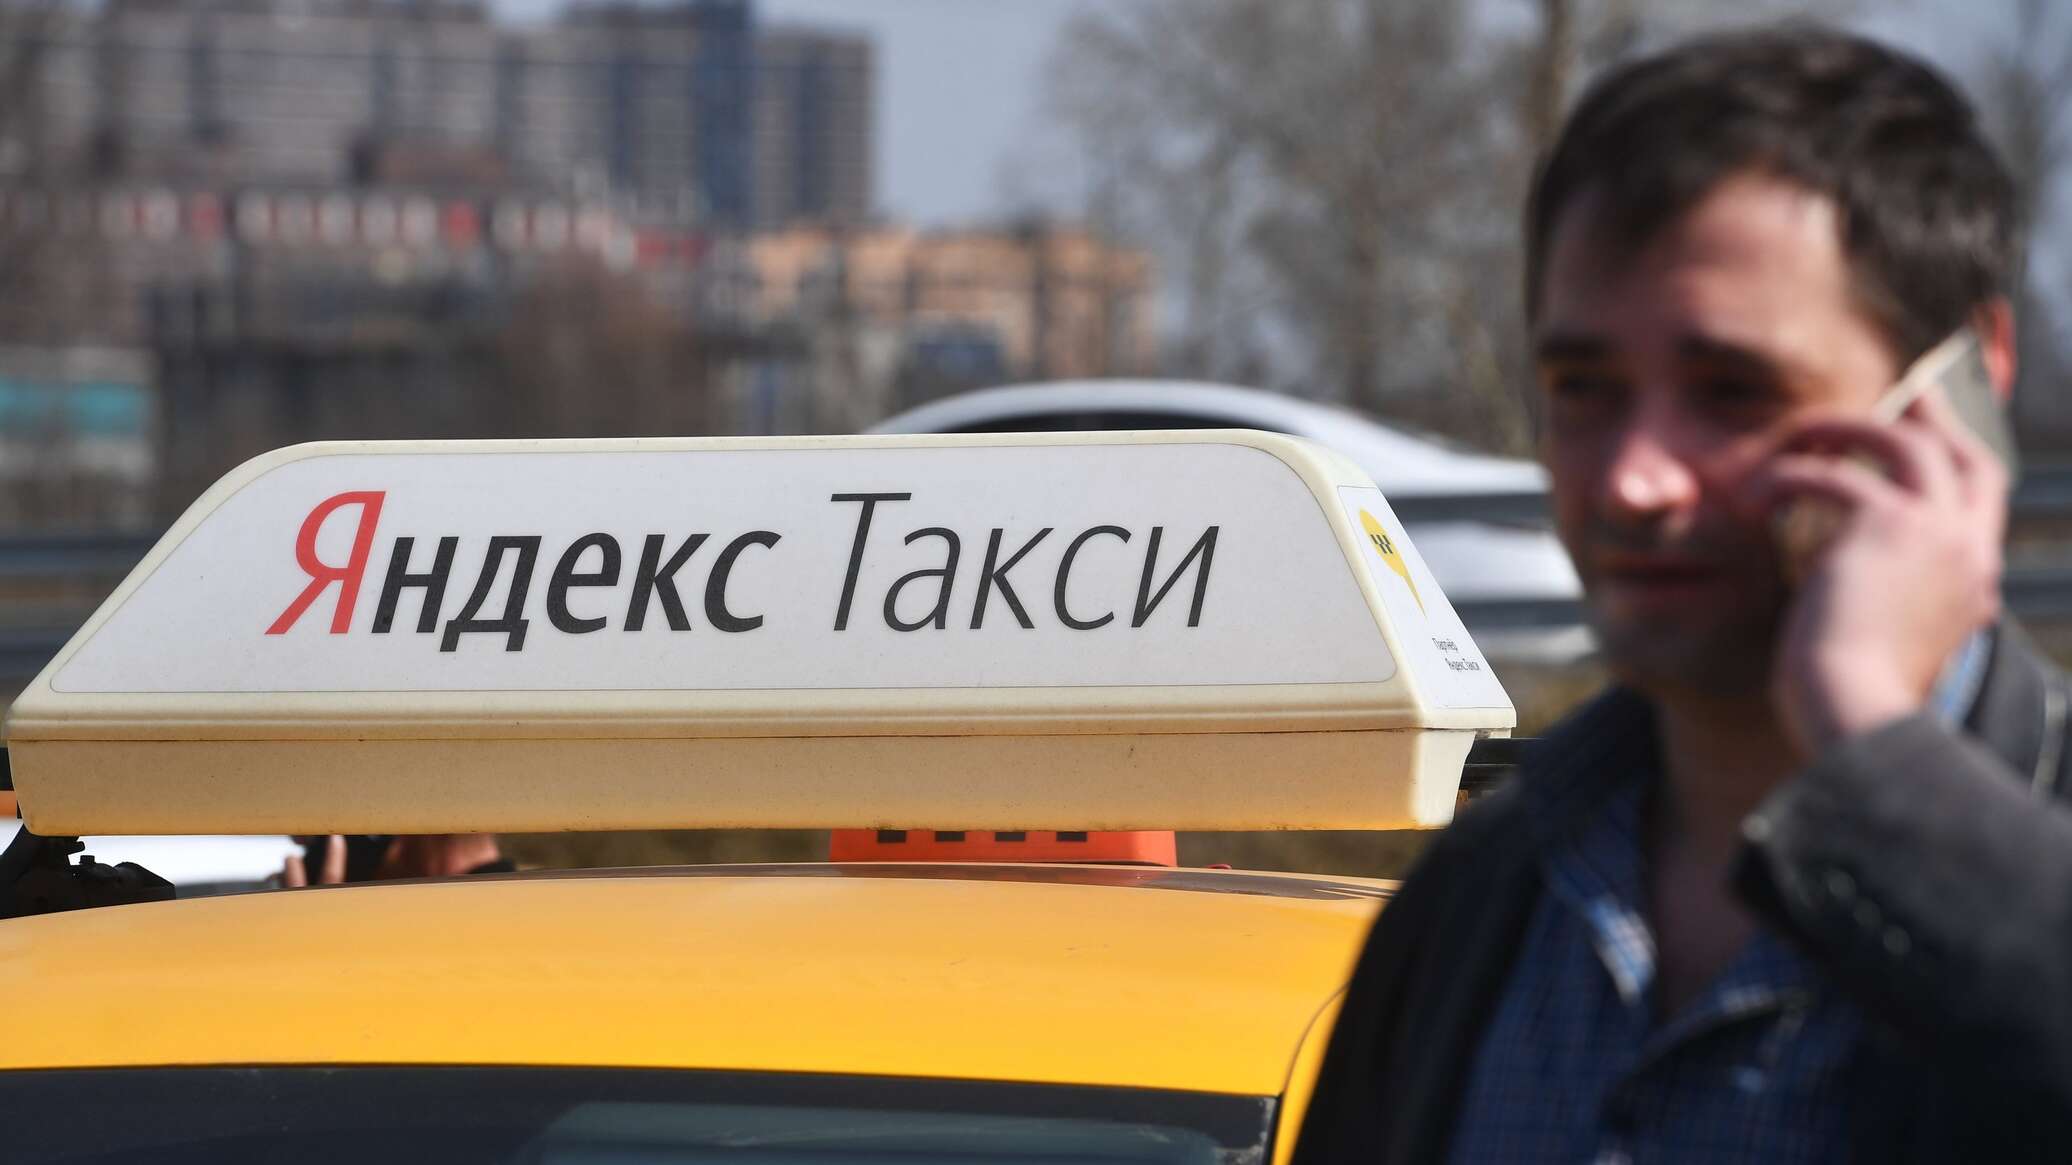 Яндекс такси картинки прикольные